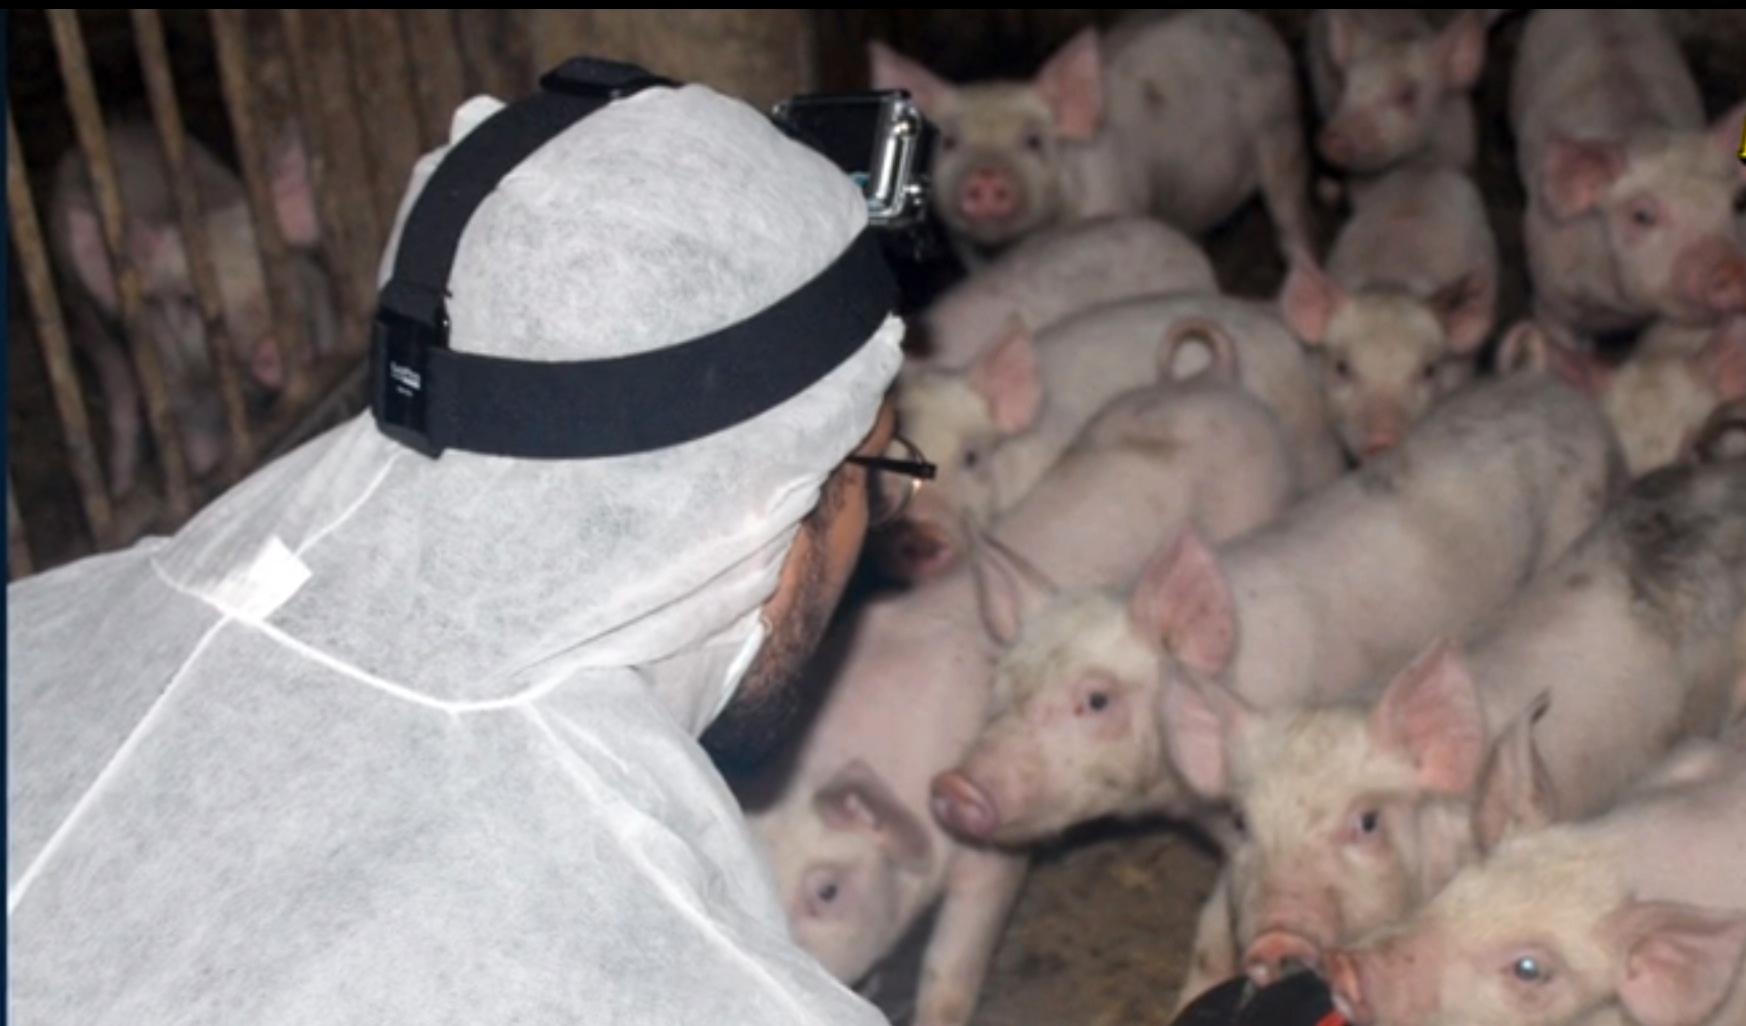 I dag ställs aktivister från Tomma burar inför rätta för att ha stulit två grisar och åtta höns. Debattören är en av dem.